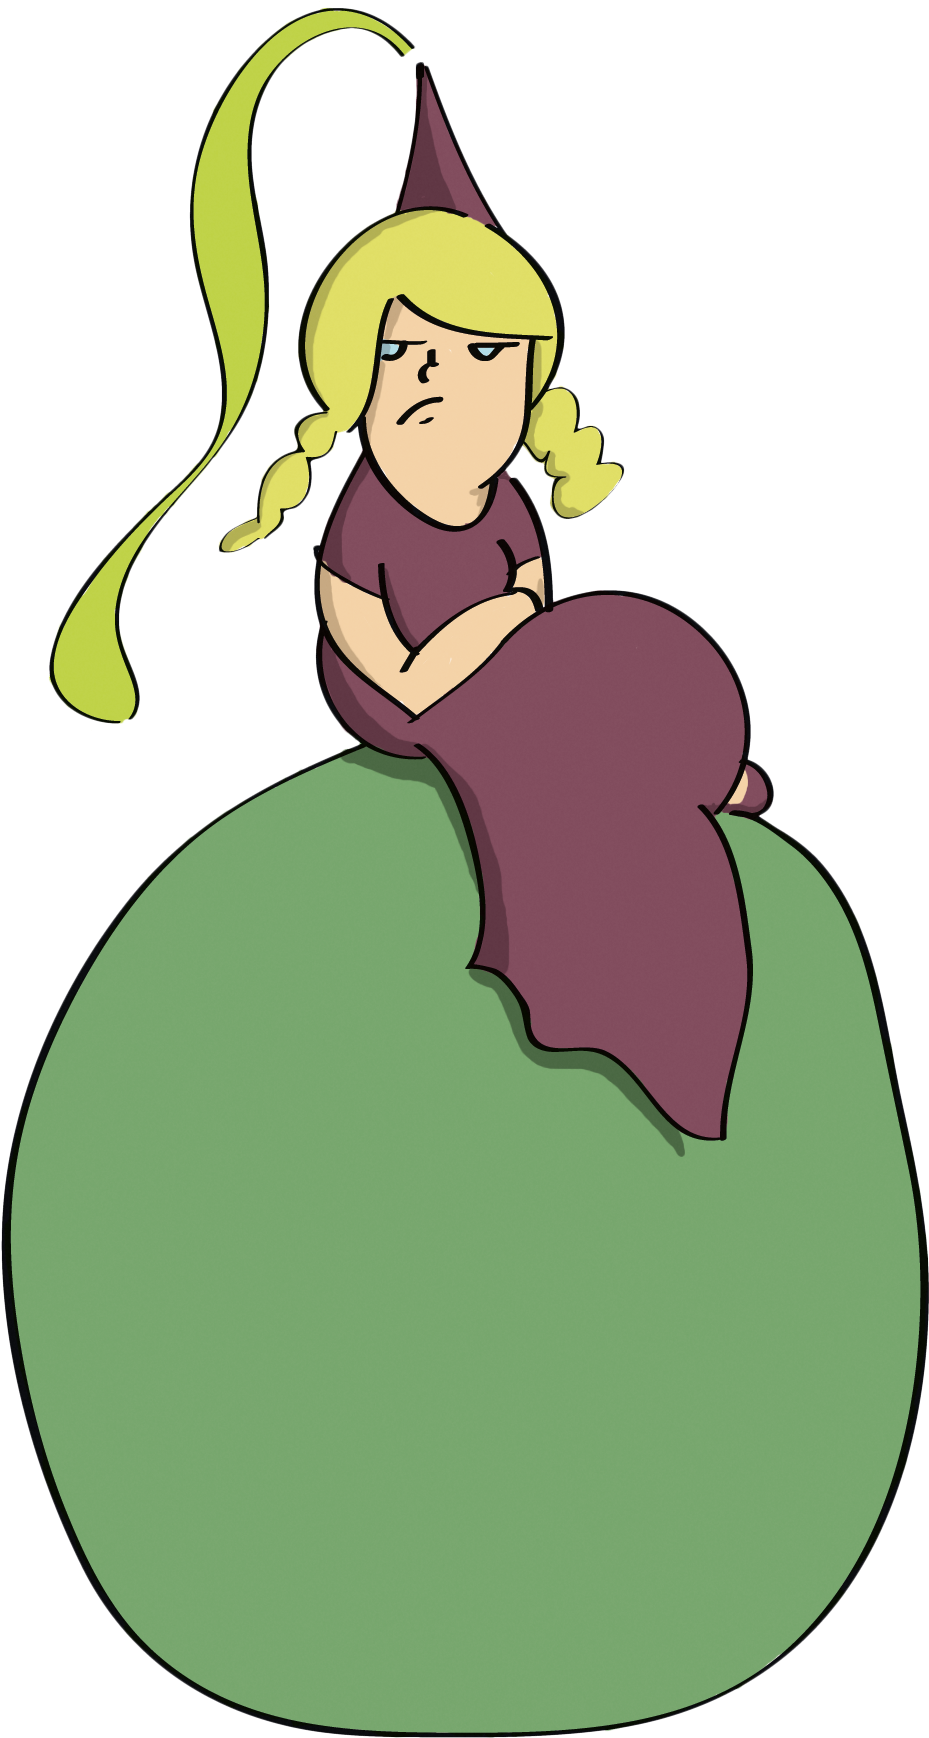 The Princess And The Pea Fairy Tale Clip Art - The Princess And The Pea (2100x2100)